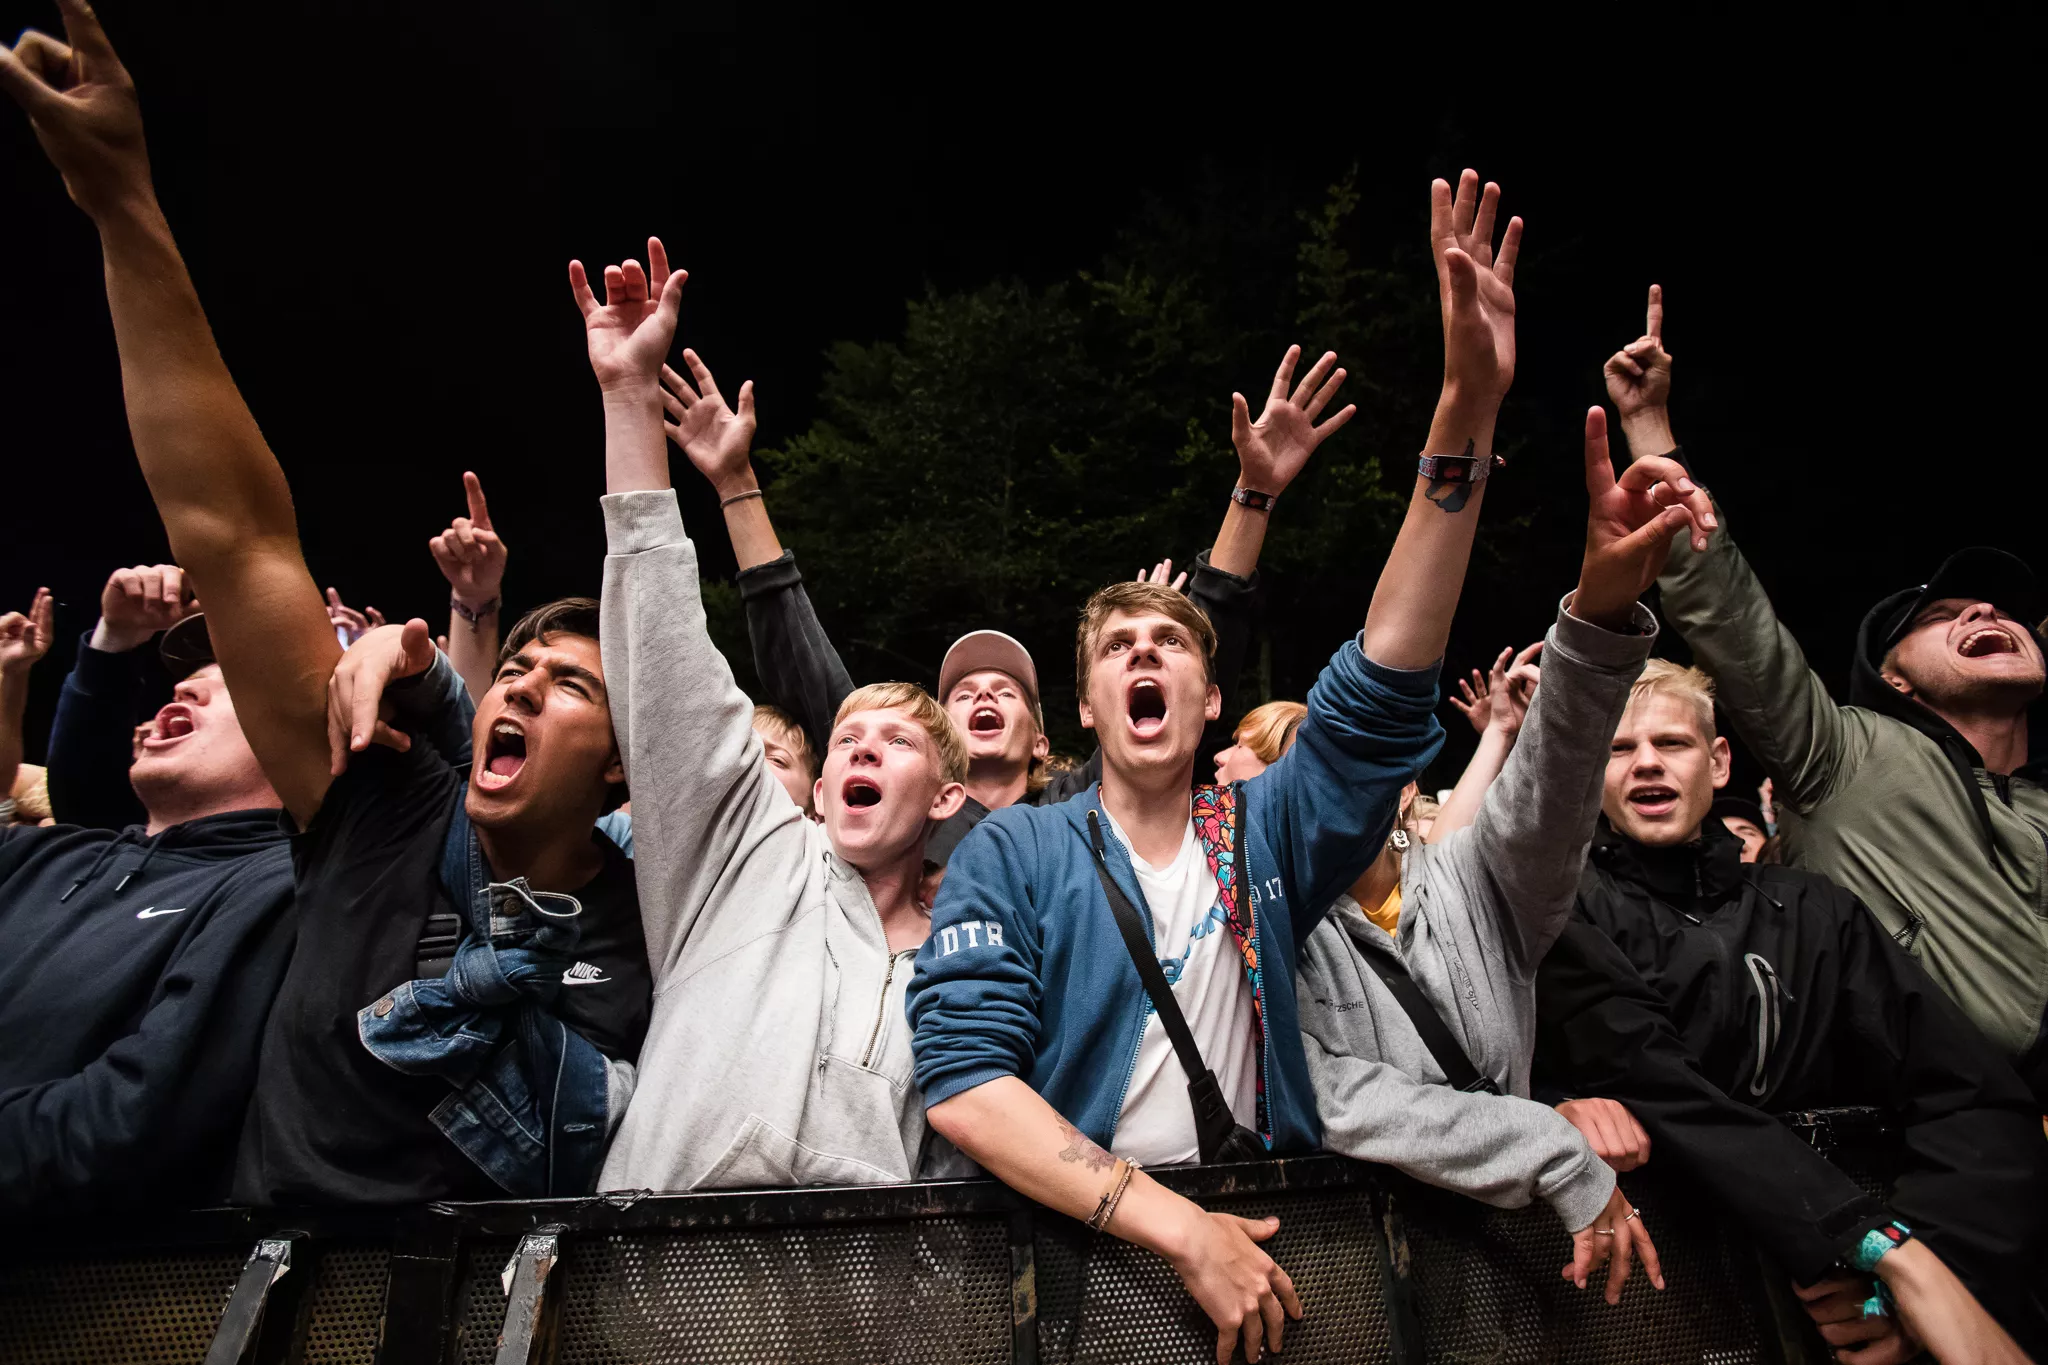 4200 publikummer: Forsøgs-koncert i Leipzig kan få betydning for dansk musikliv